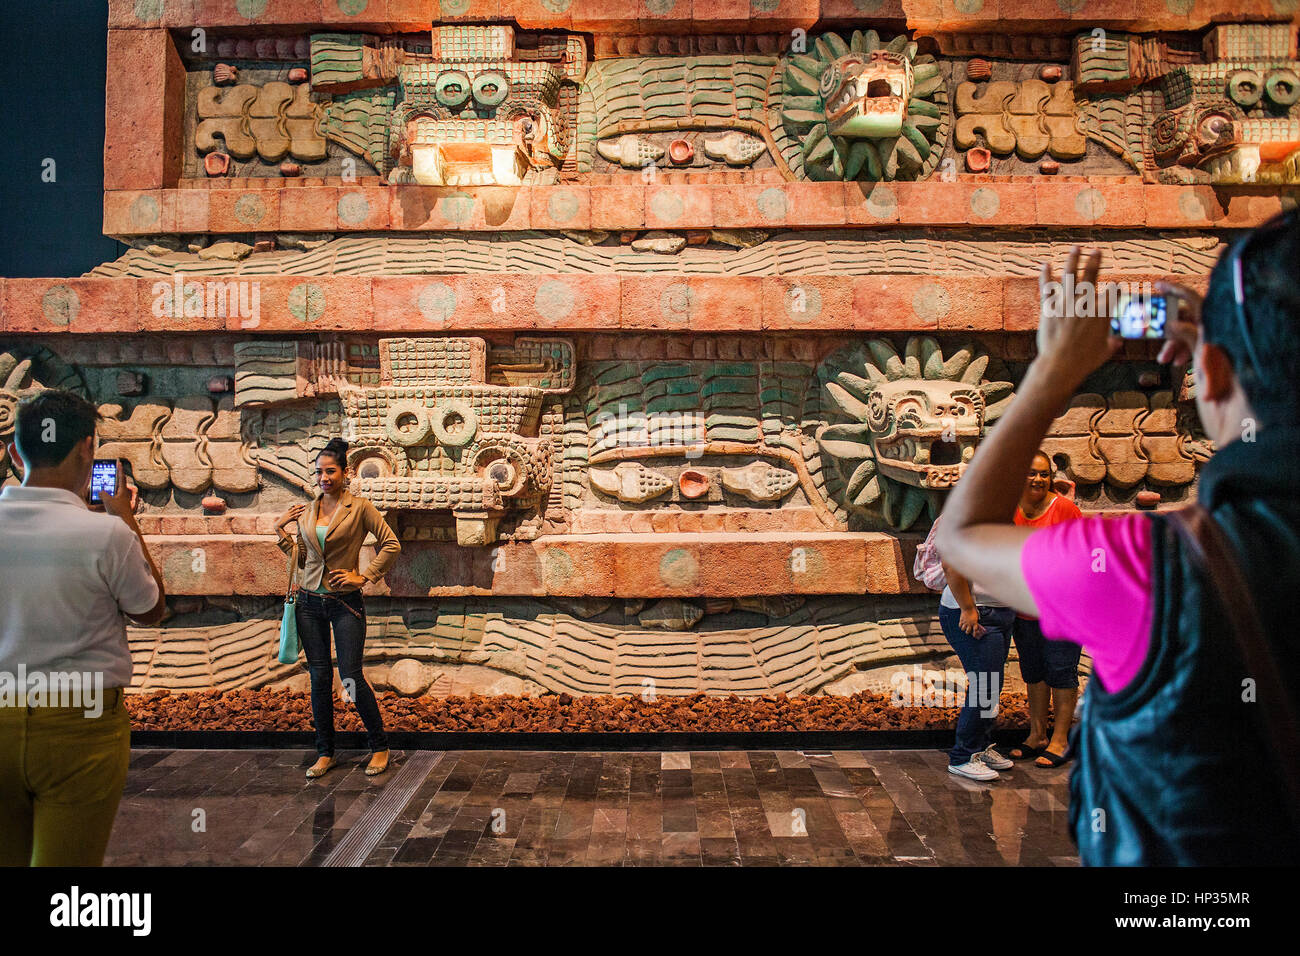 Réplica, Piramide de la serpiente emplumada´, Pirámide de la Serpiente emplumada, o serpiente, de Teotihuacan, Museo Nacional de Antropología. Ciudad de México. Foto de stock